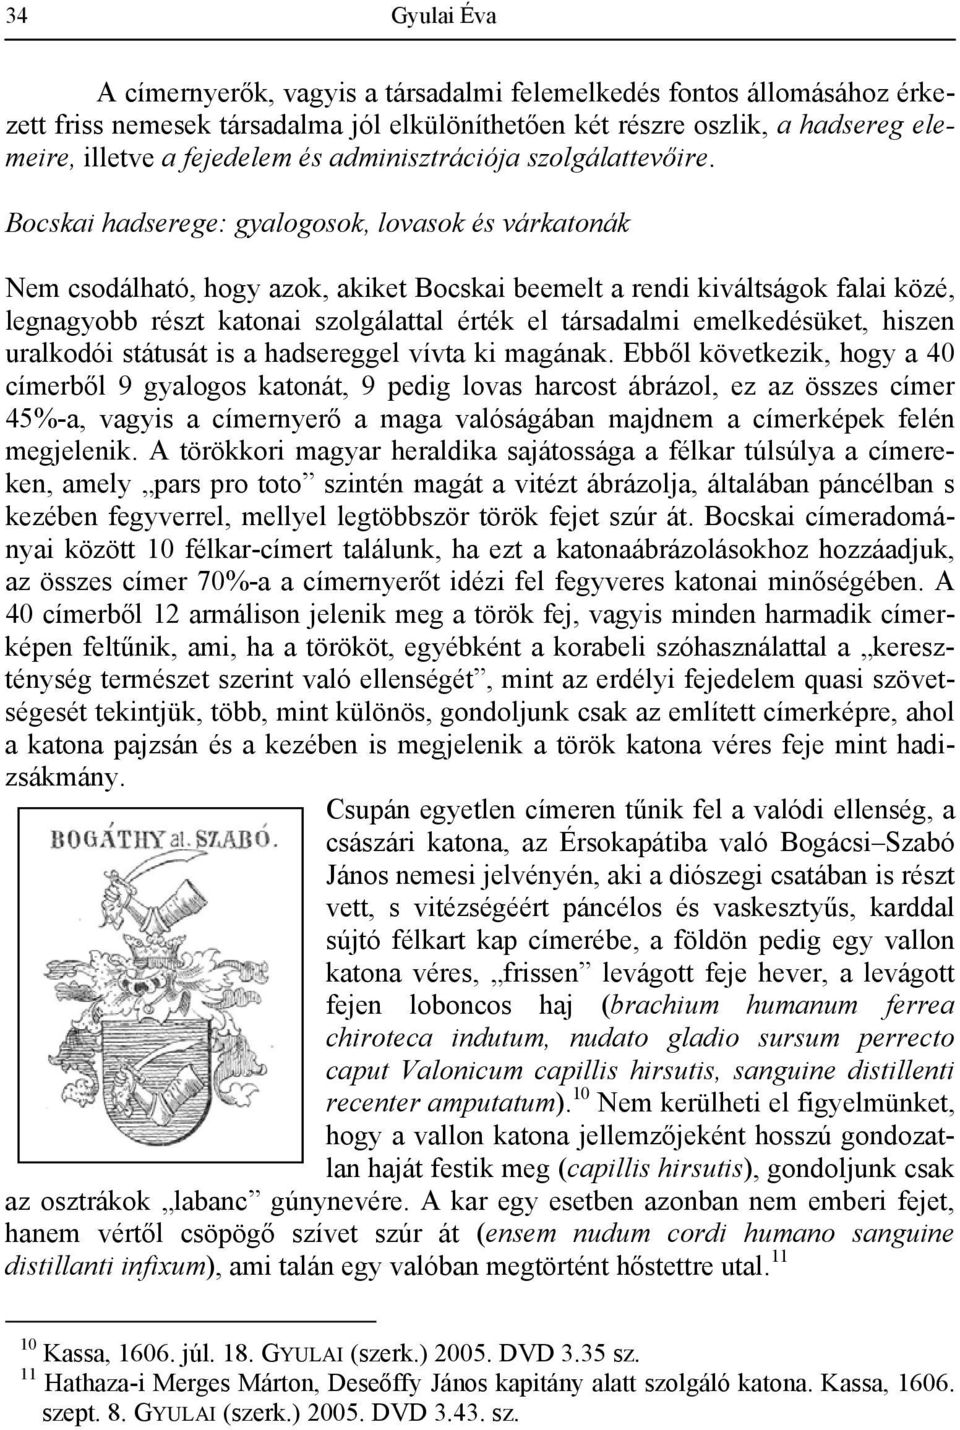 Bocskai hadserege: gyalogosok, lovasok és várkatonák Nem csodálható, hogy azok, akiket Bocskai beemelt a rendi kiváltságok falai közé, legnagyobb részt katonai szolgálattal érték el társadalmi